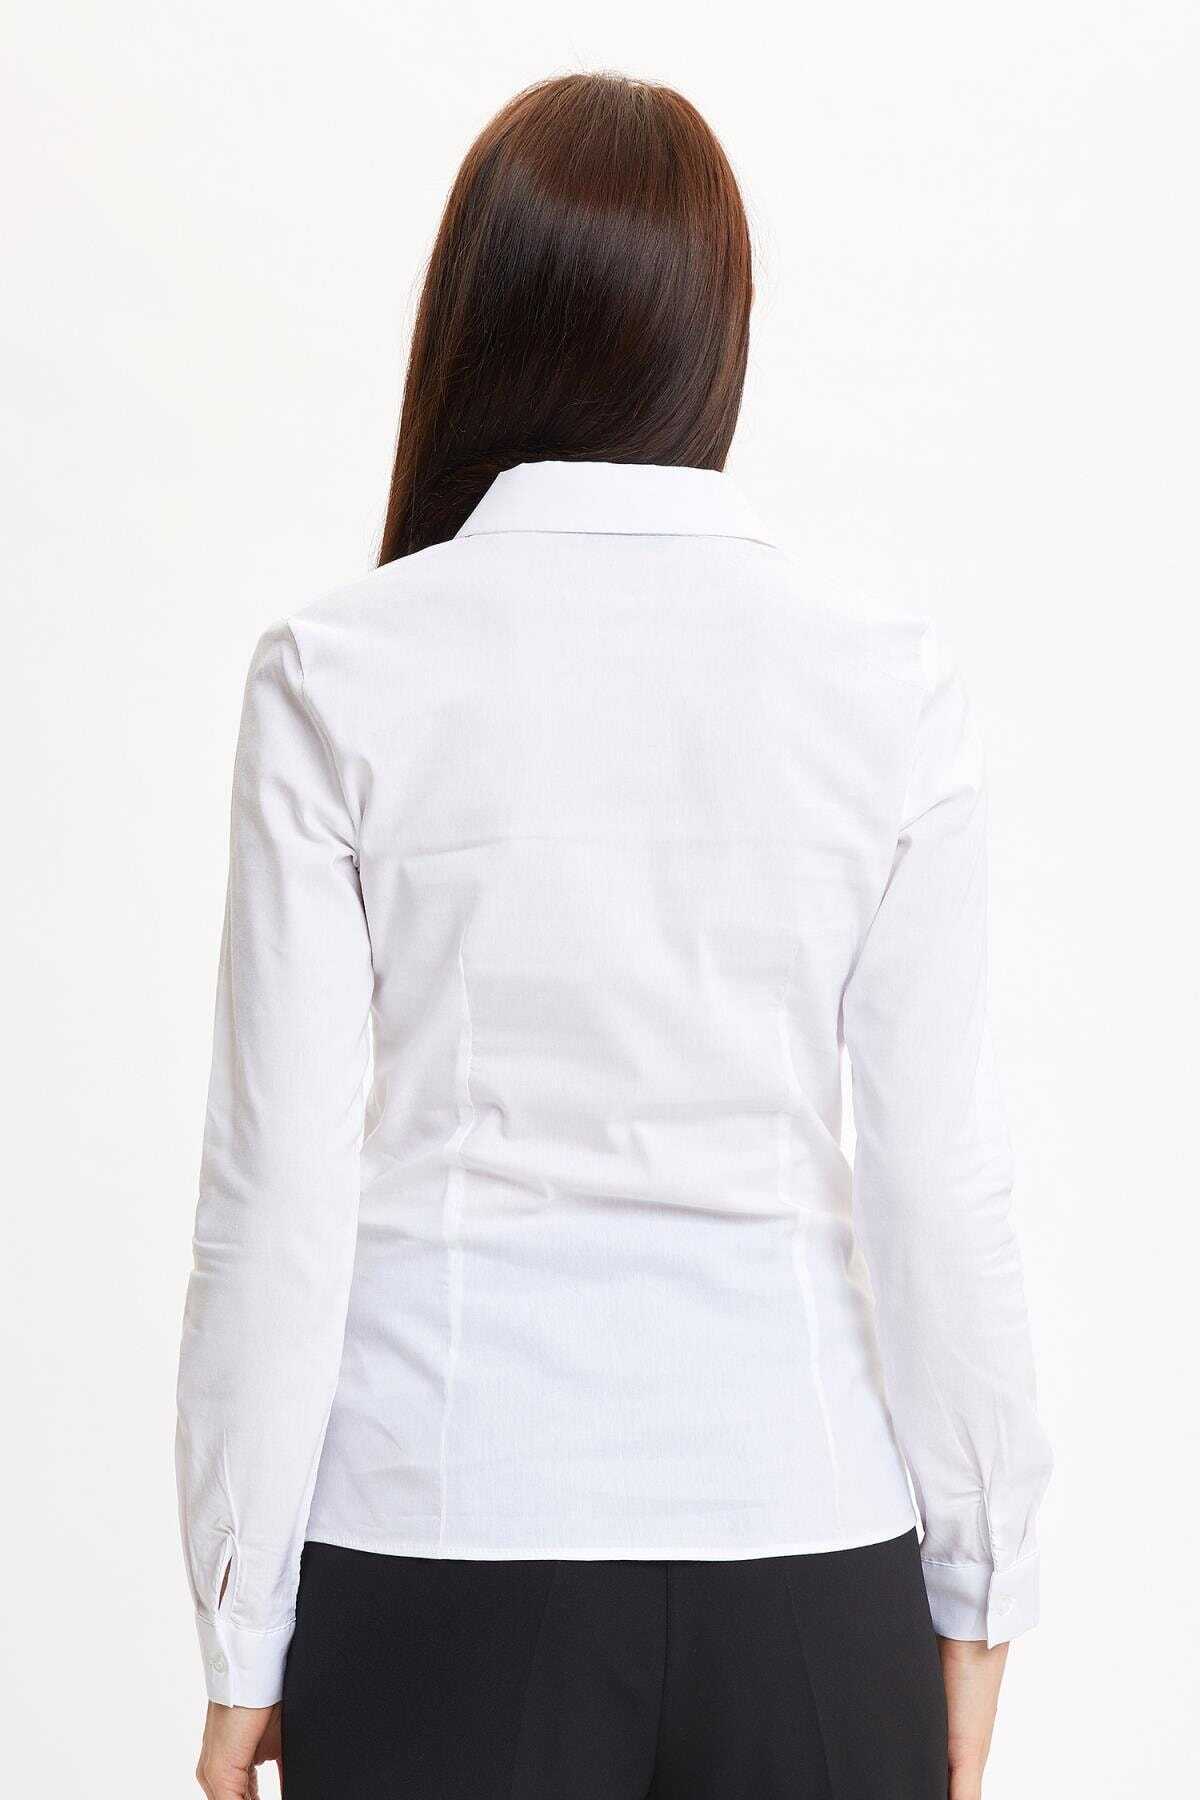 پیراهن زنانه یقه کلاسیک سفید برند DeFacto 